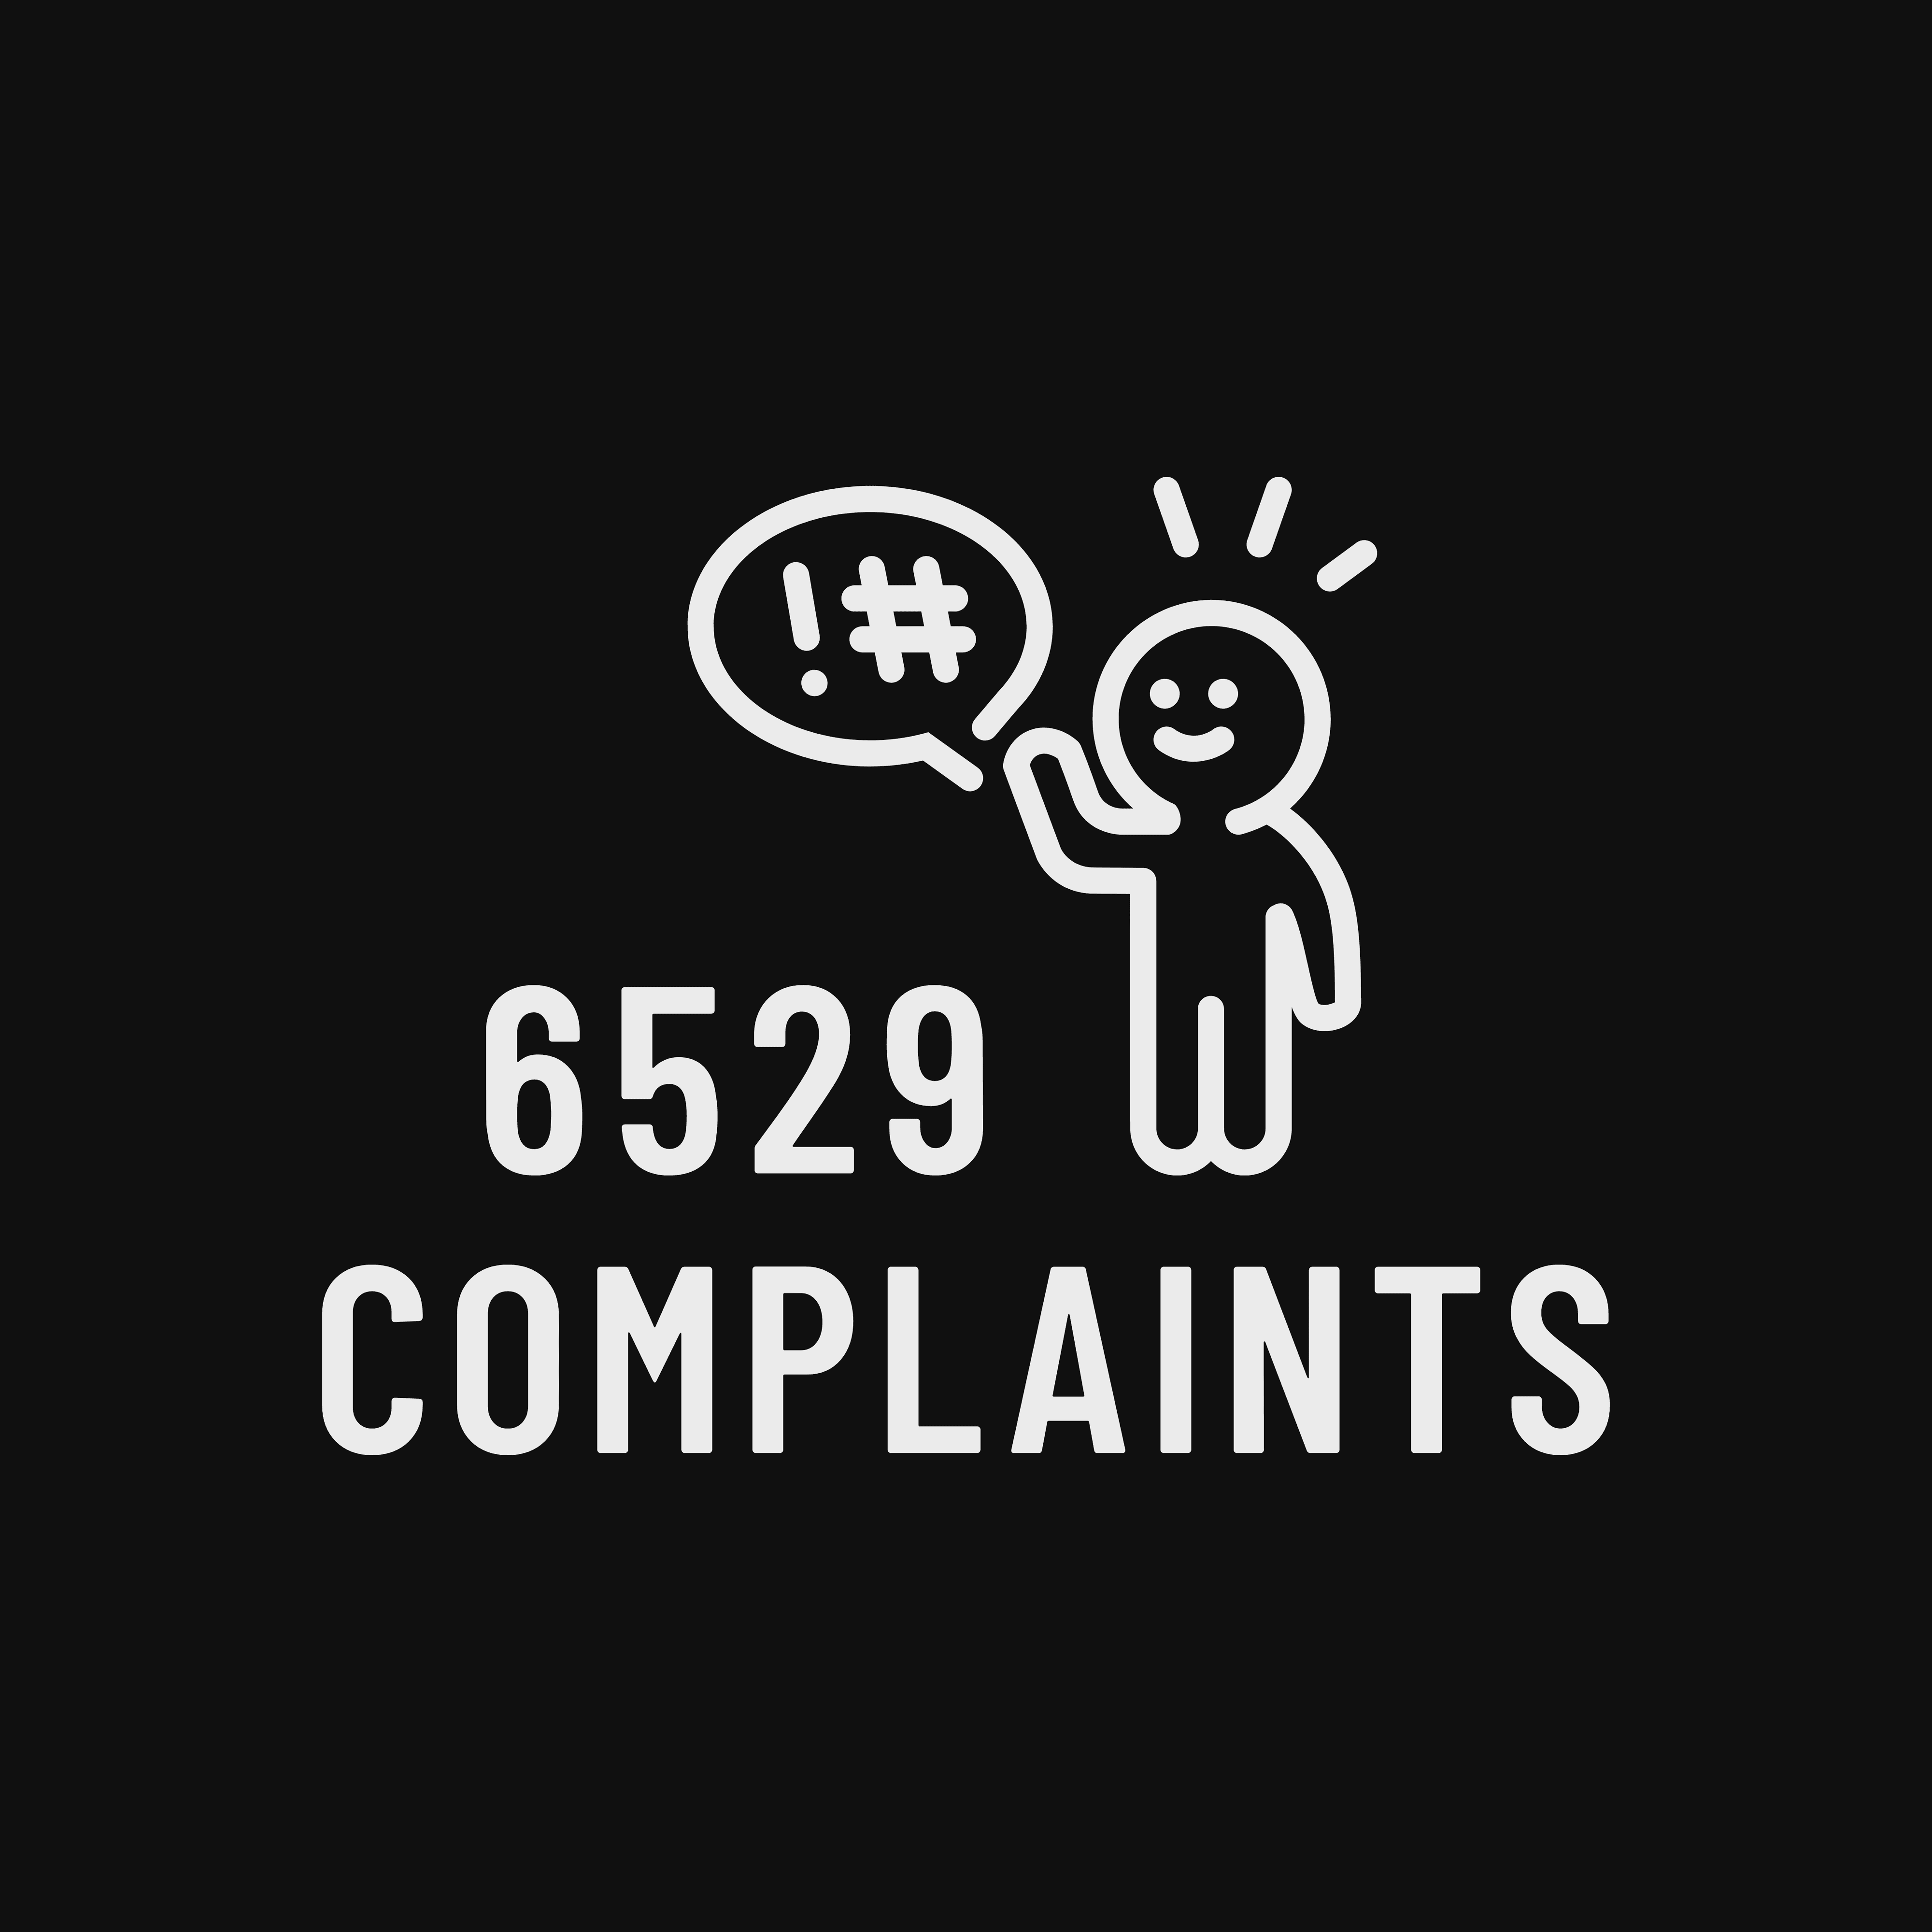 rememes-6529complaints